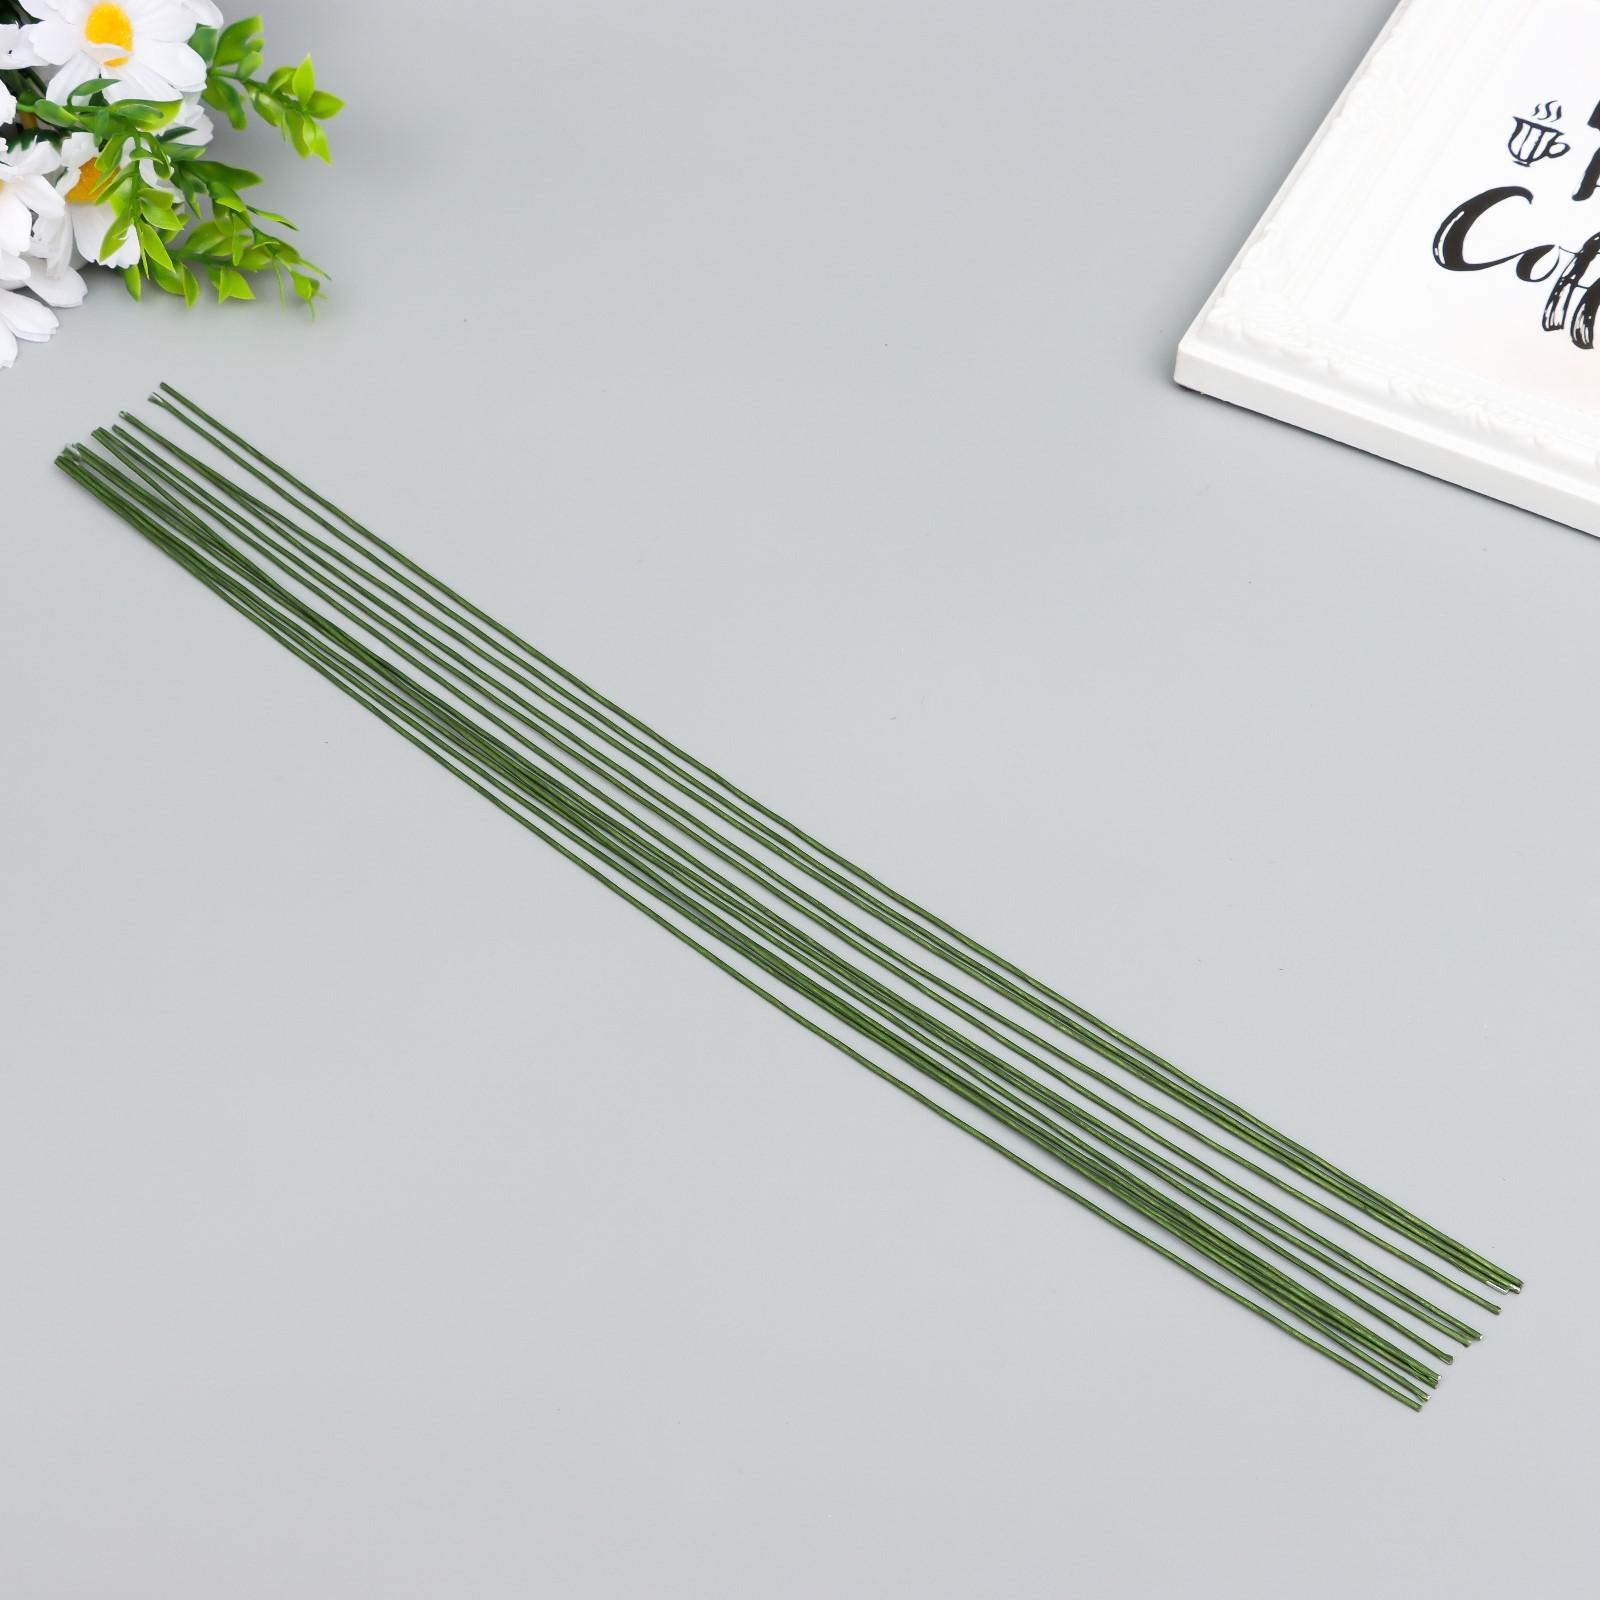 Проволока флористическая зеленая 1,2 мм 12 шт